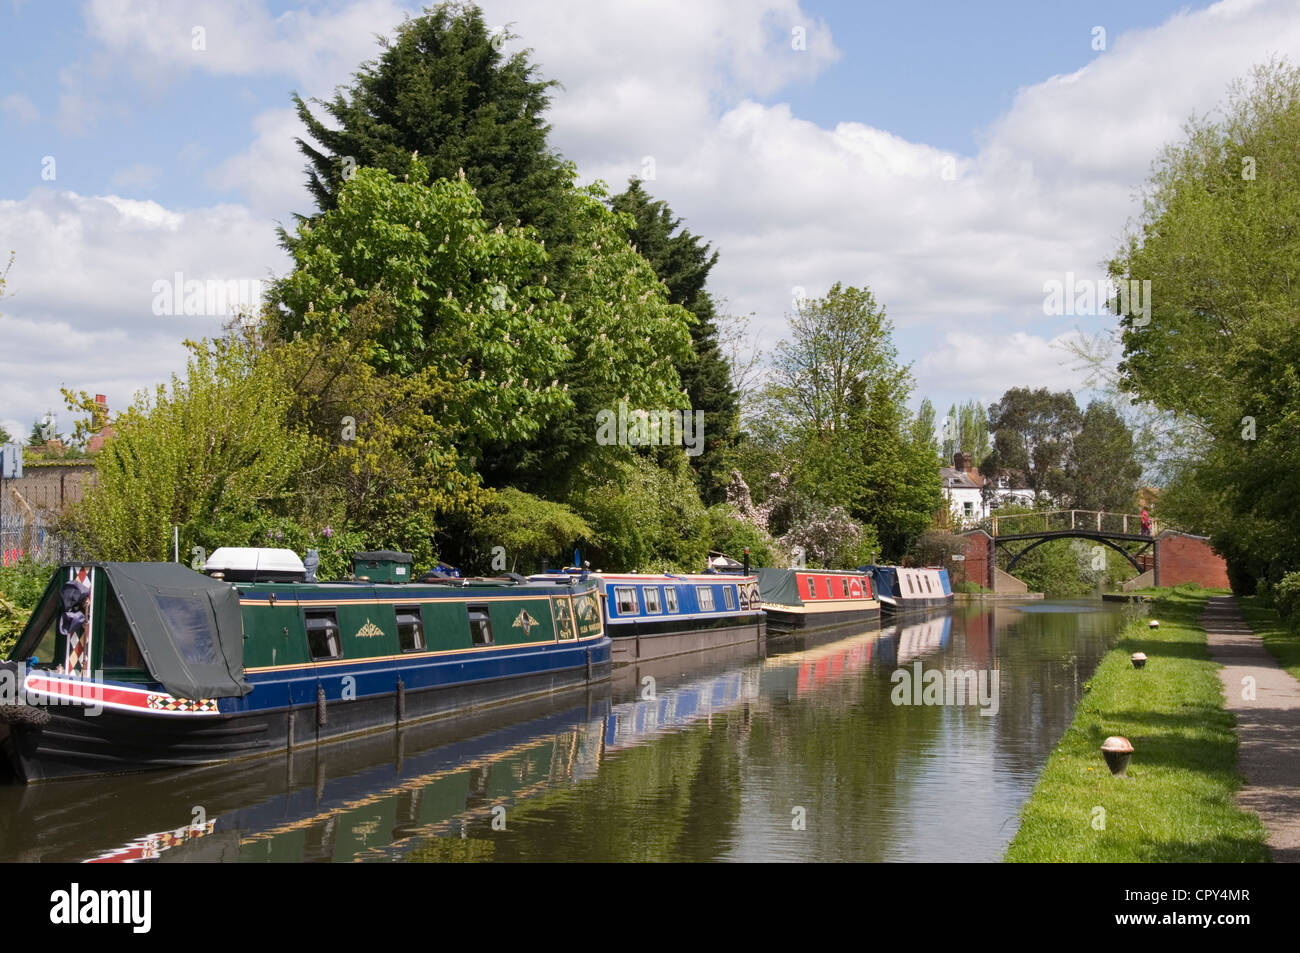 Bucks - vertäut Aylesbury Arm der GUC Canal - Blick auf die Wasserstraße - Kanal Boote - entfernte Brücke - Bäume - Sonnenlicht - blauer Himmel Stockfoto